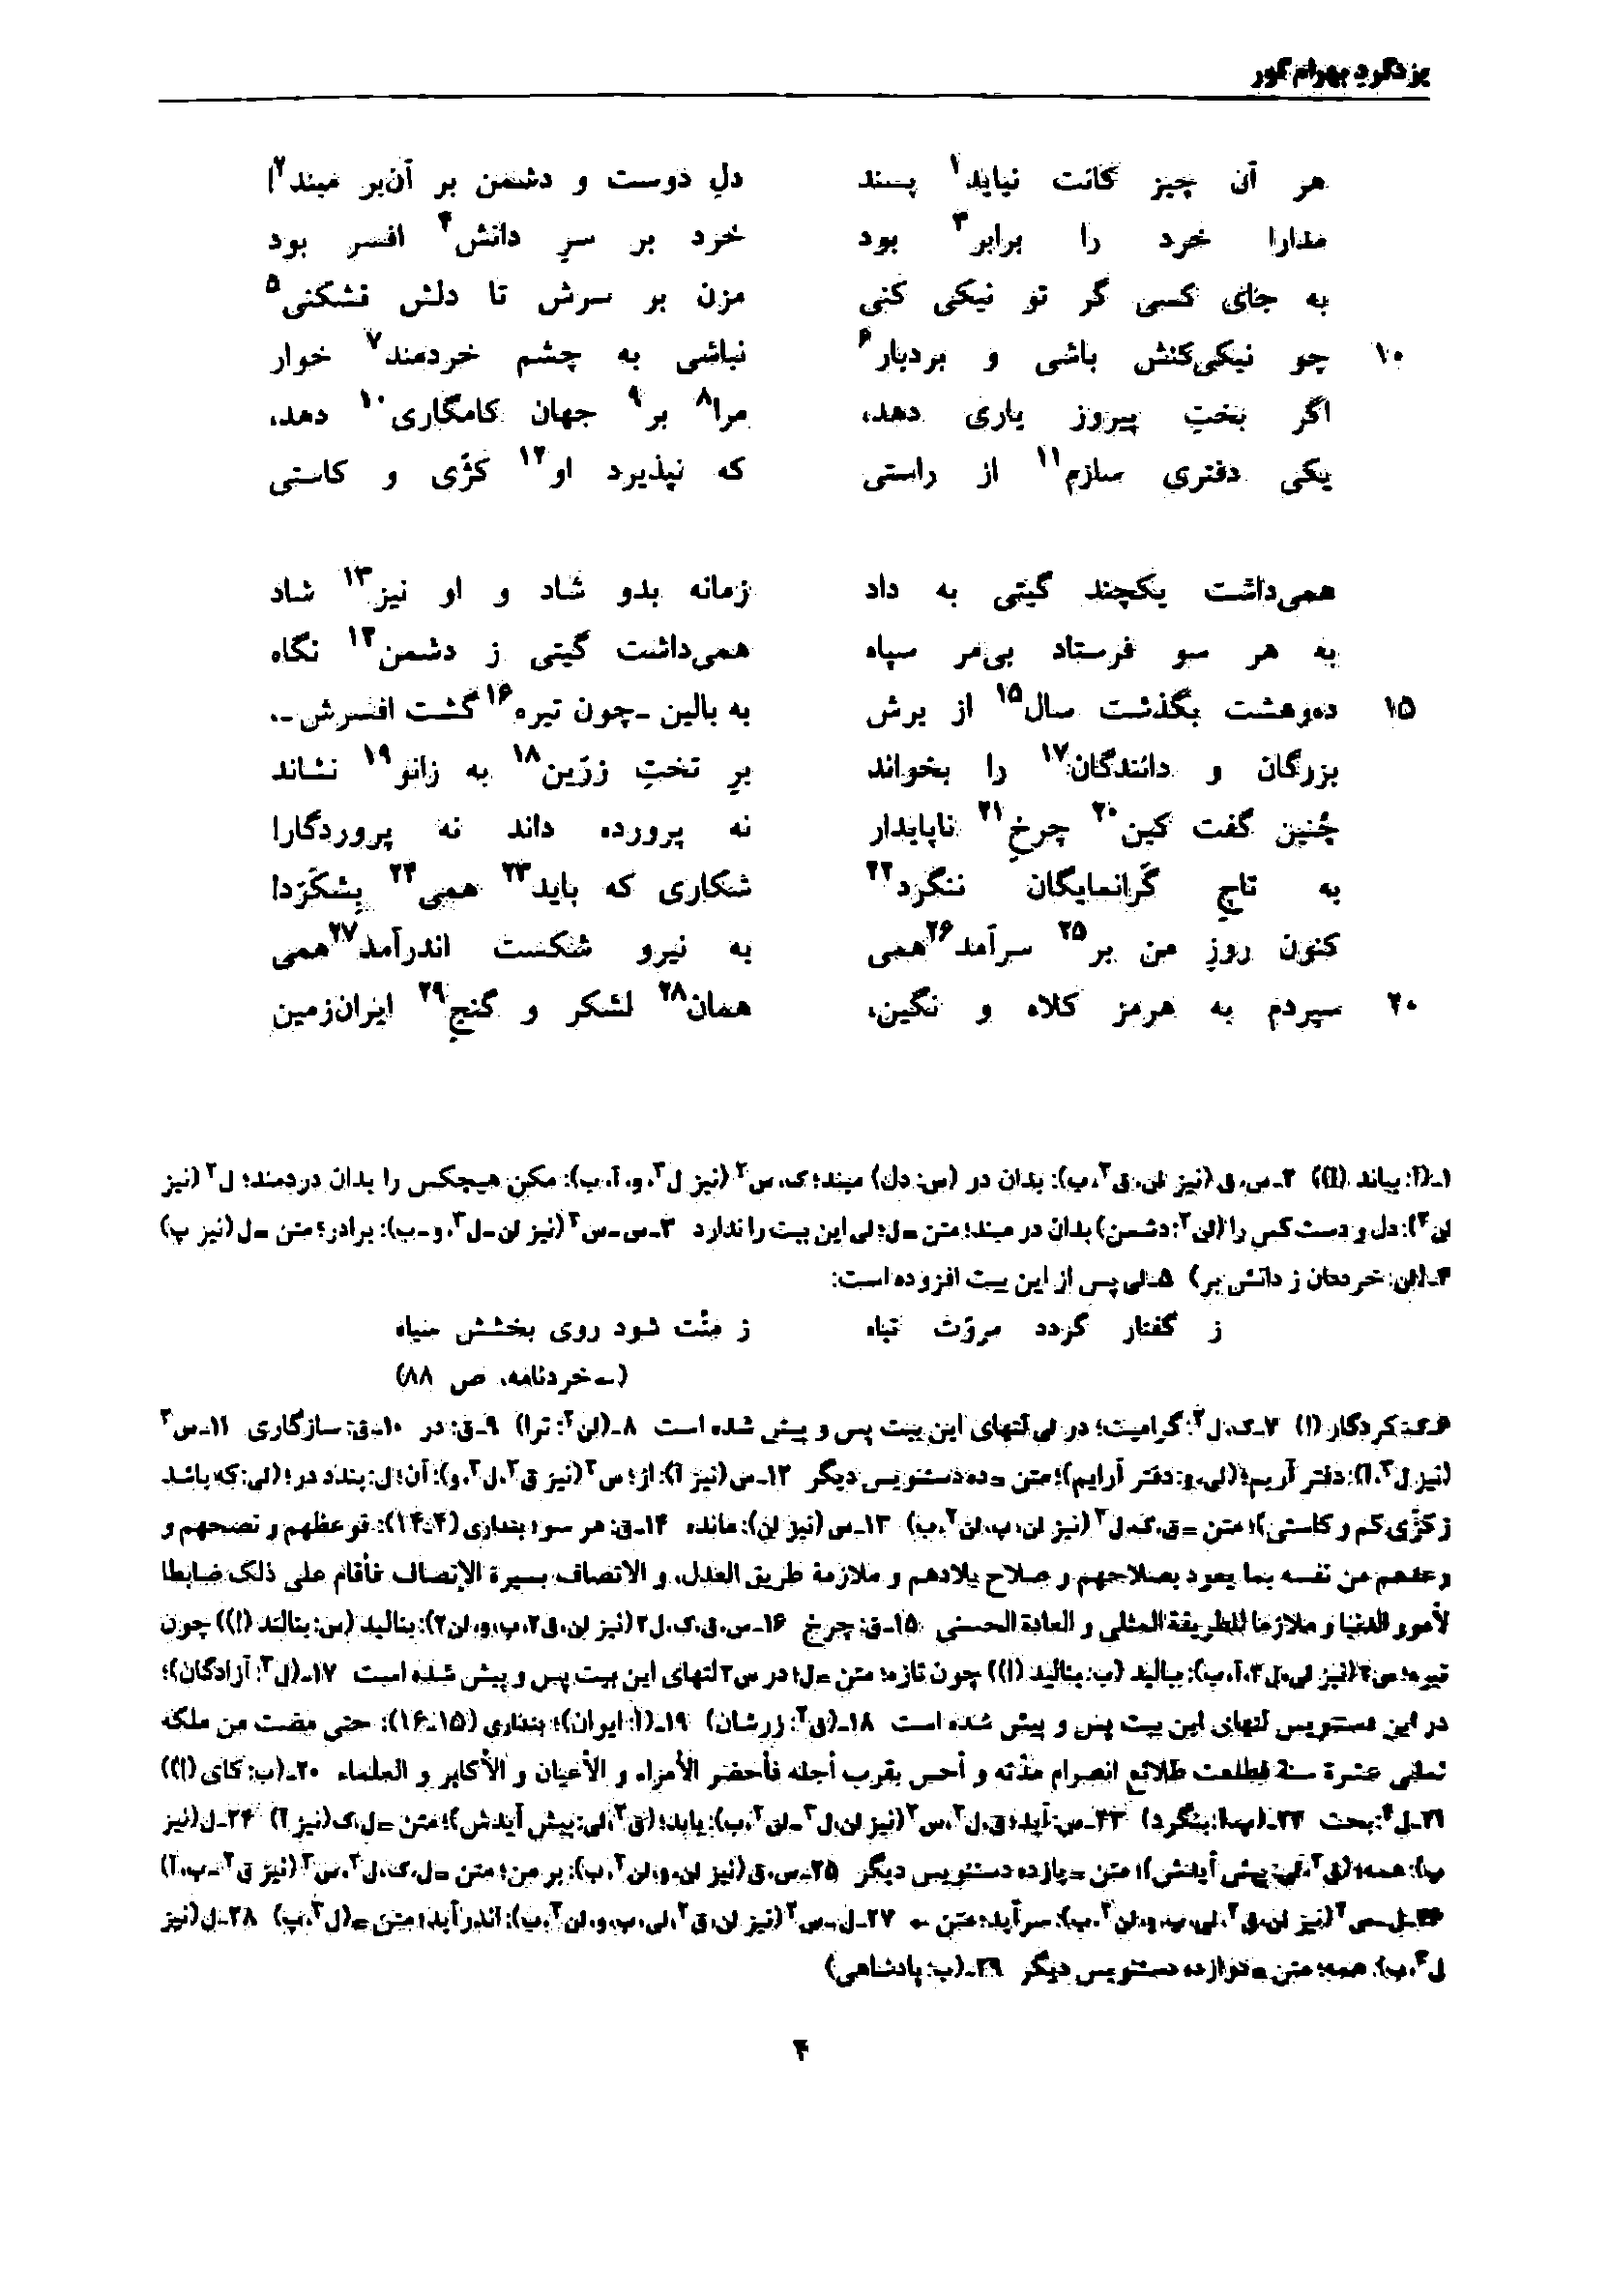 vol. 7, p. 4